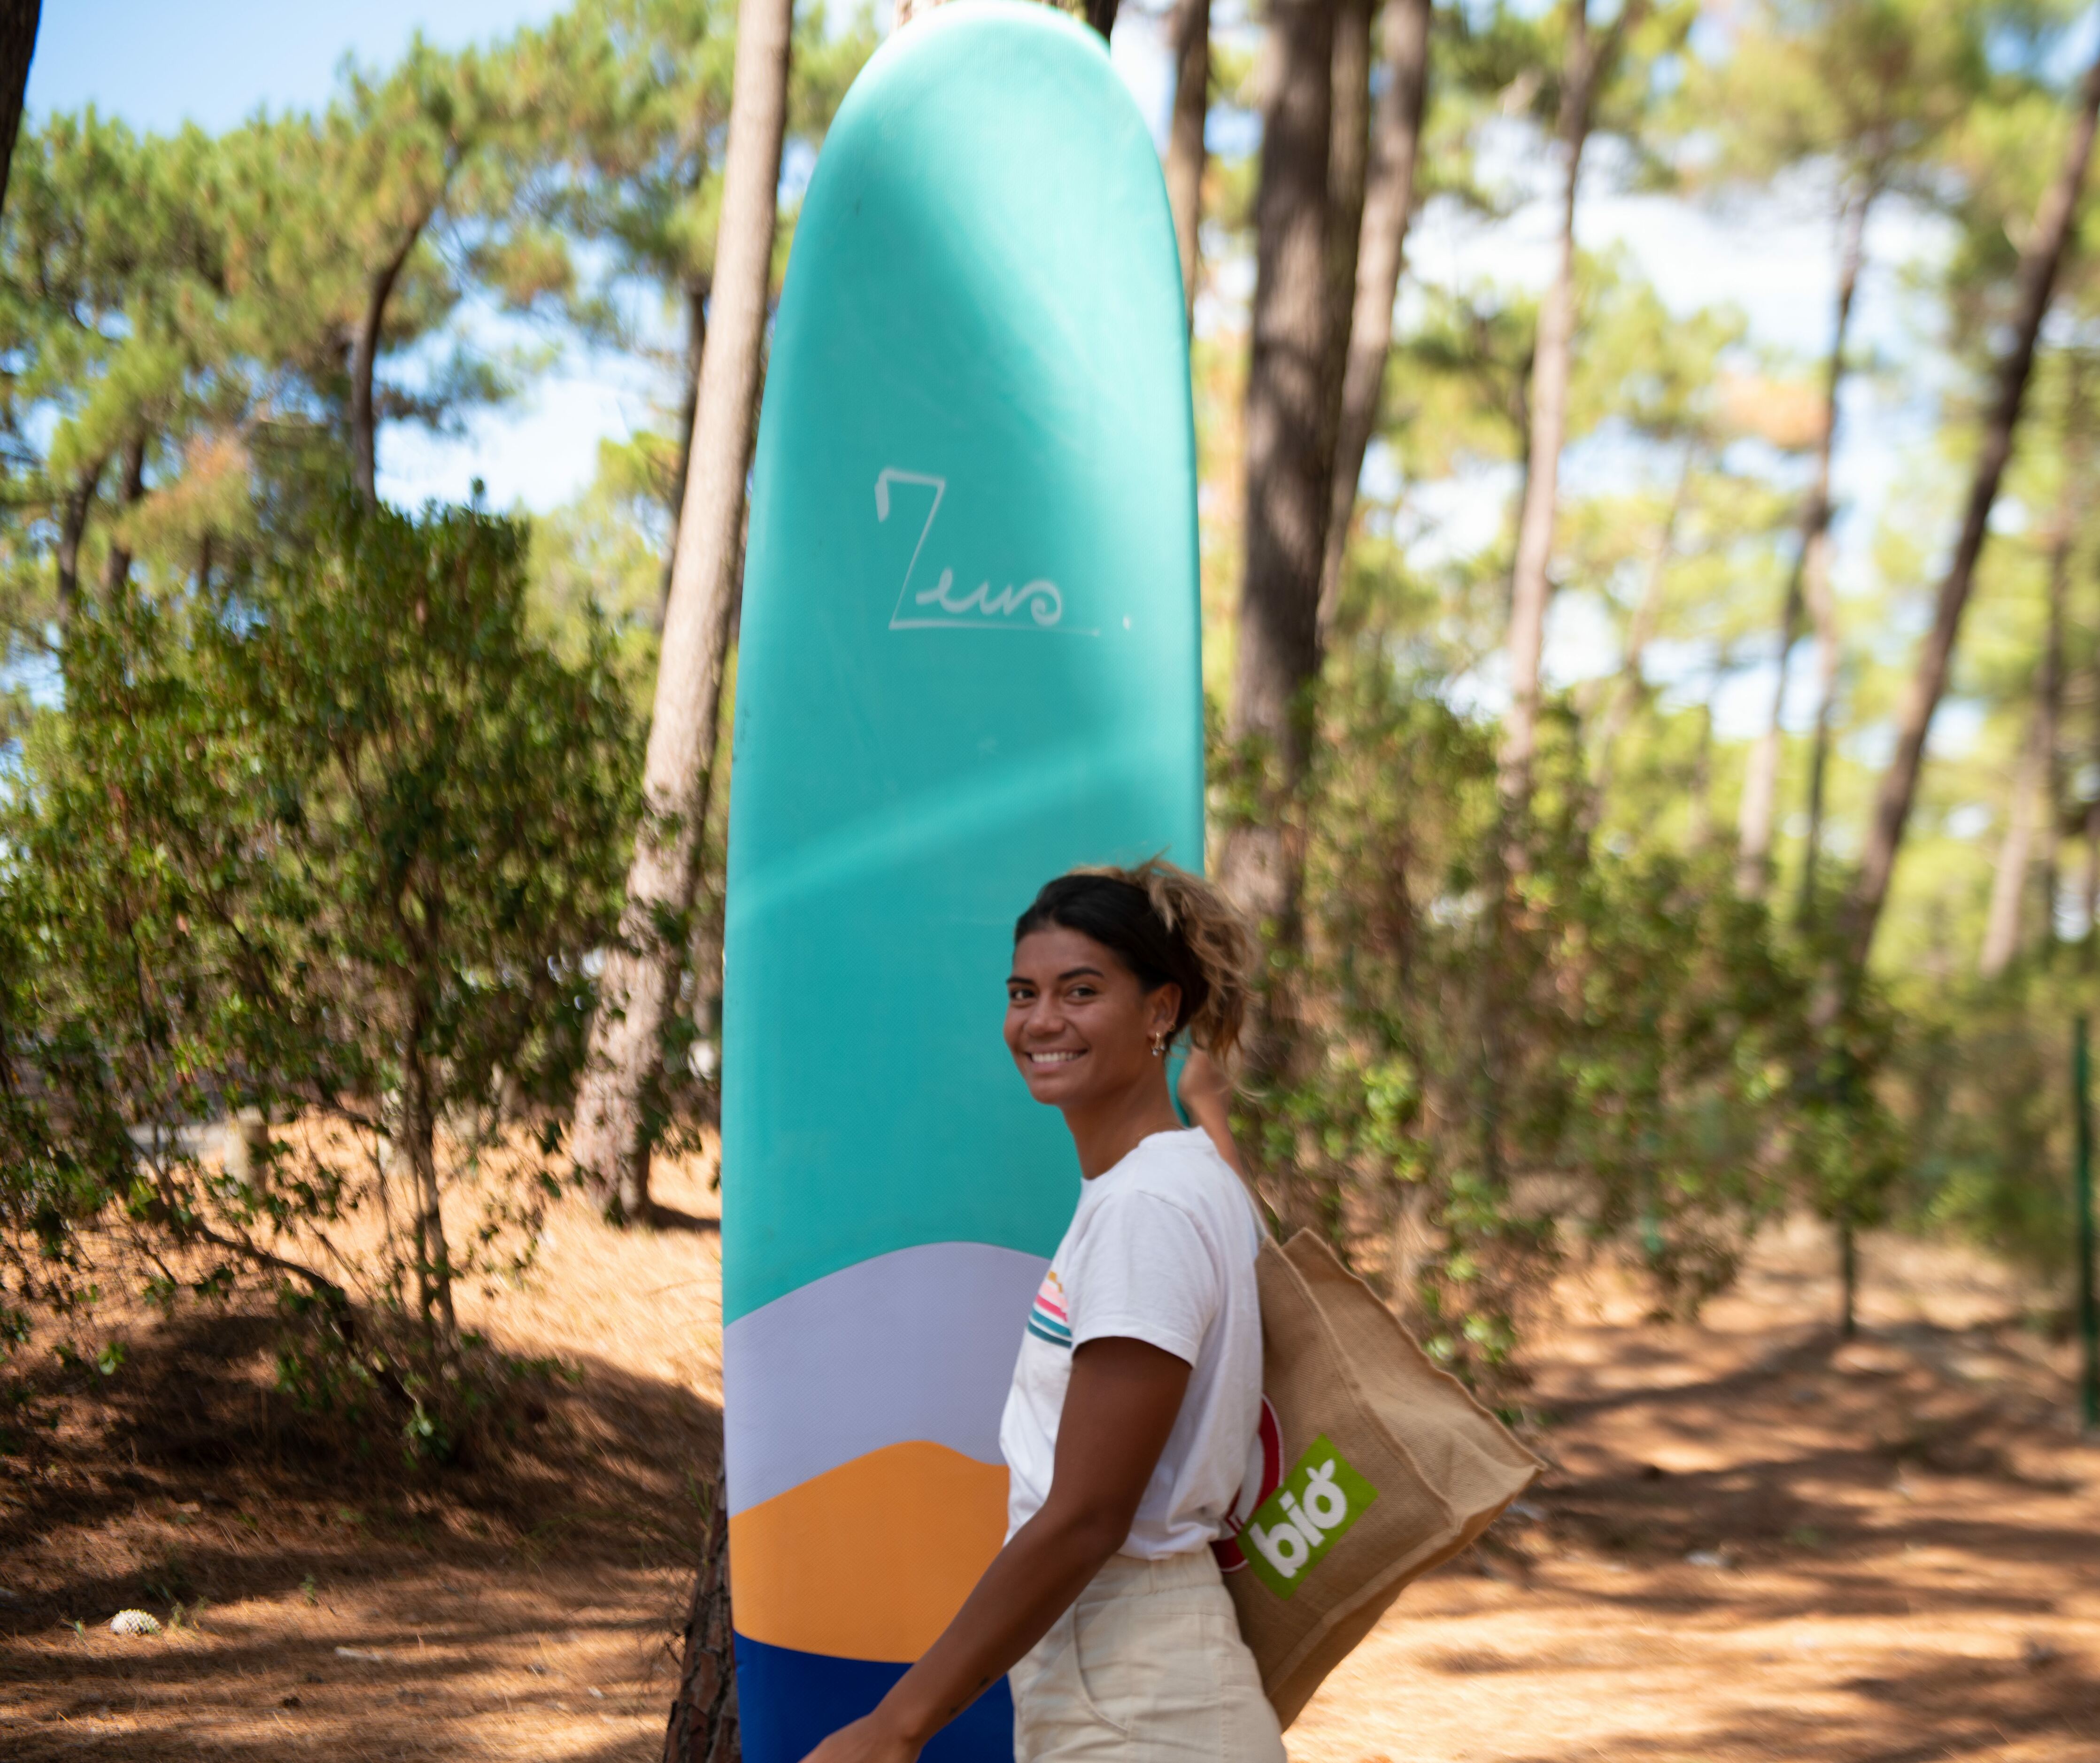 Choix idéal pour un longboard surf adapté - Zeus Surf